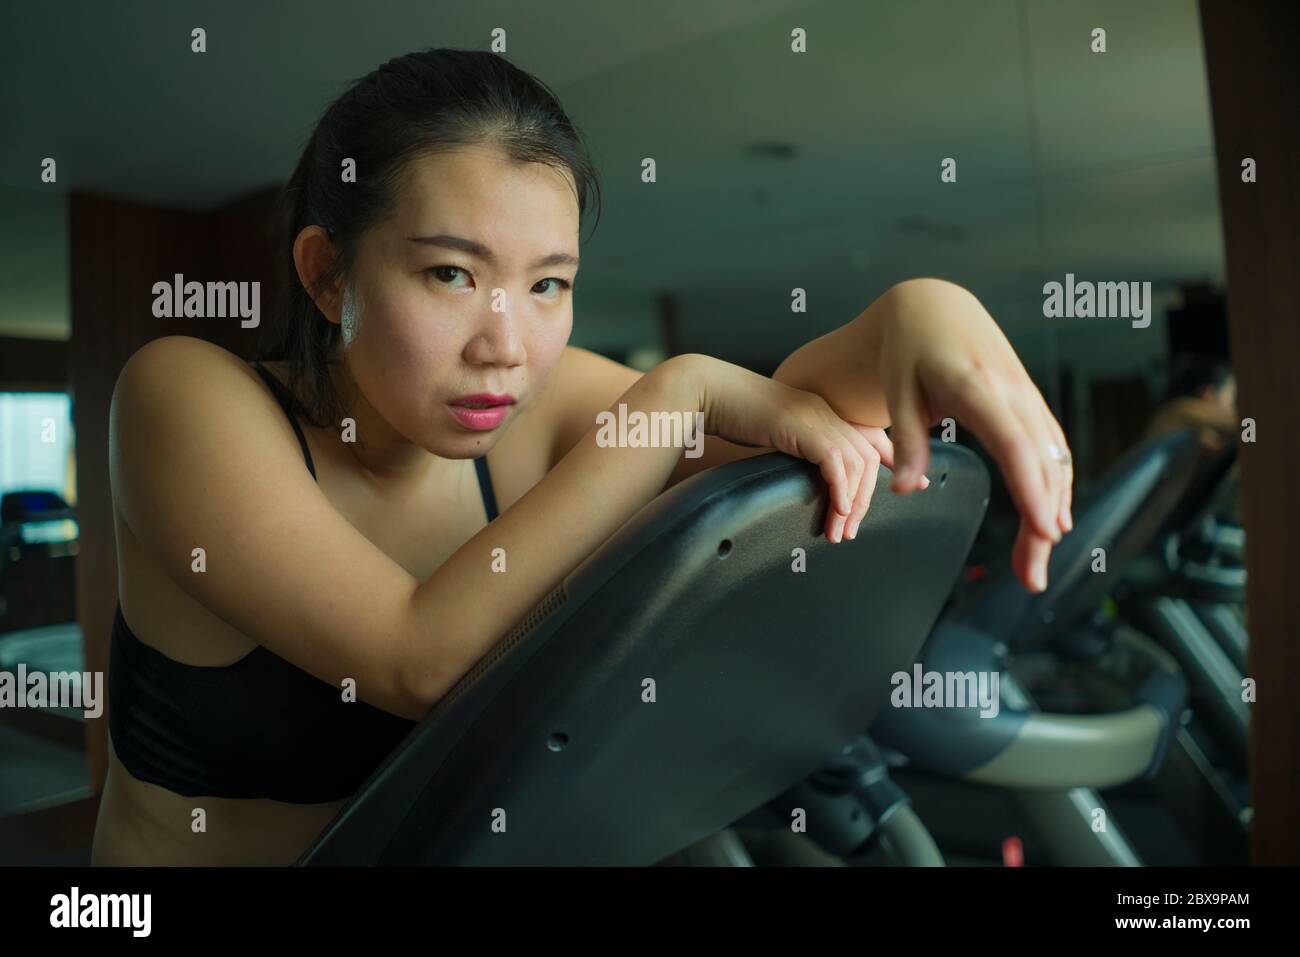 Jeune femme chinoise asiatique attirante et en forme épuisé pendant l'entraînement à la salle de gym de l'hôtel ou au club de fitness jogging dans l'entraînement de tapis roulant dur avec tir Banque D'Images